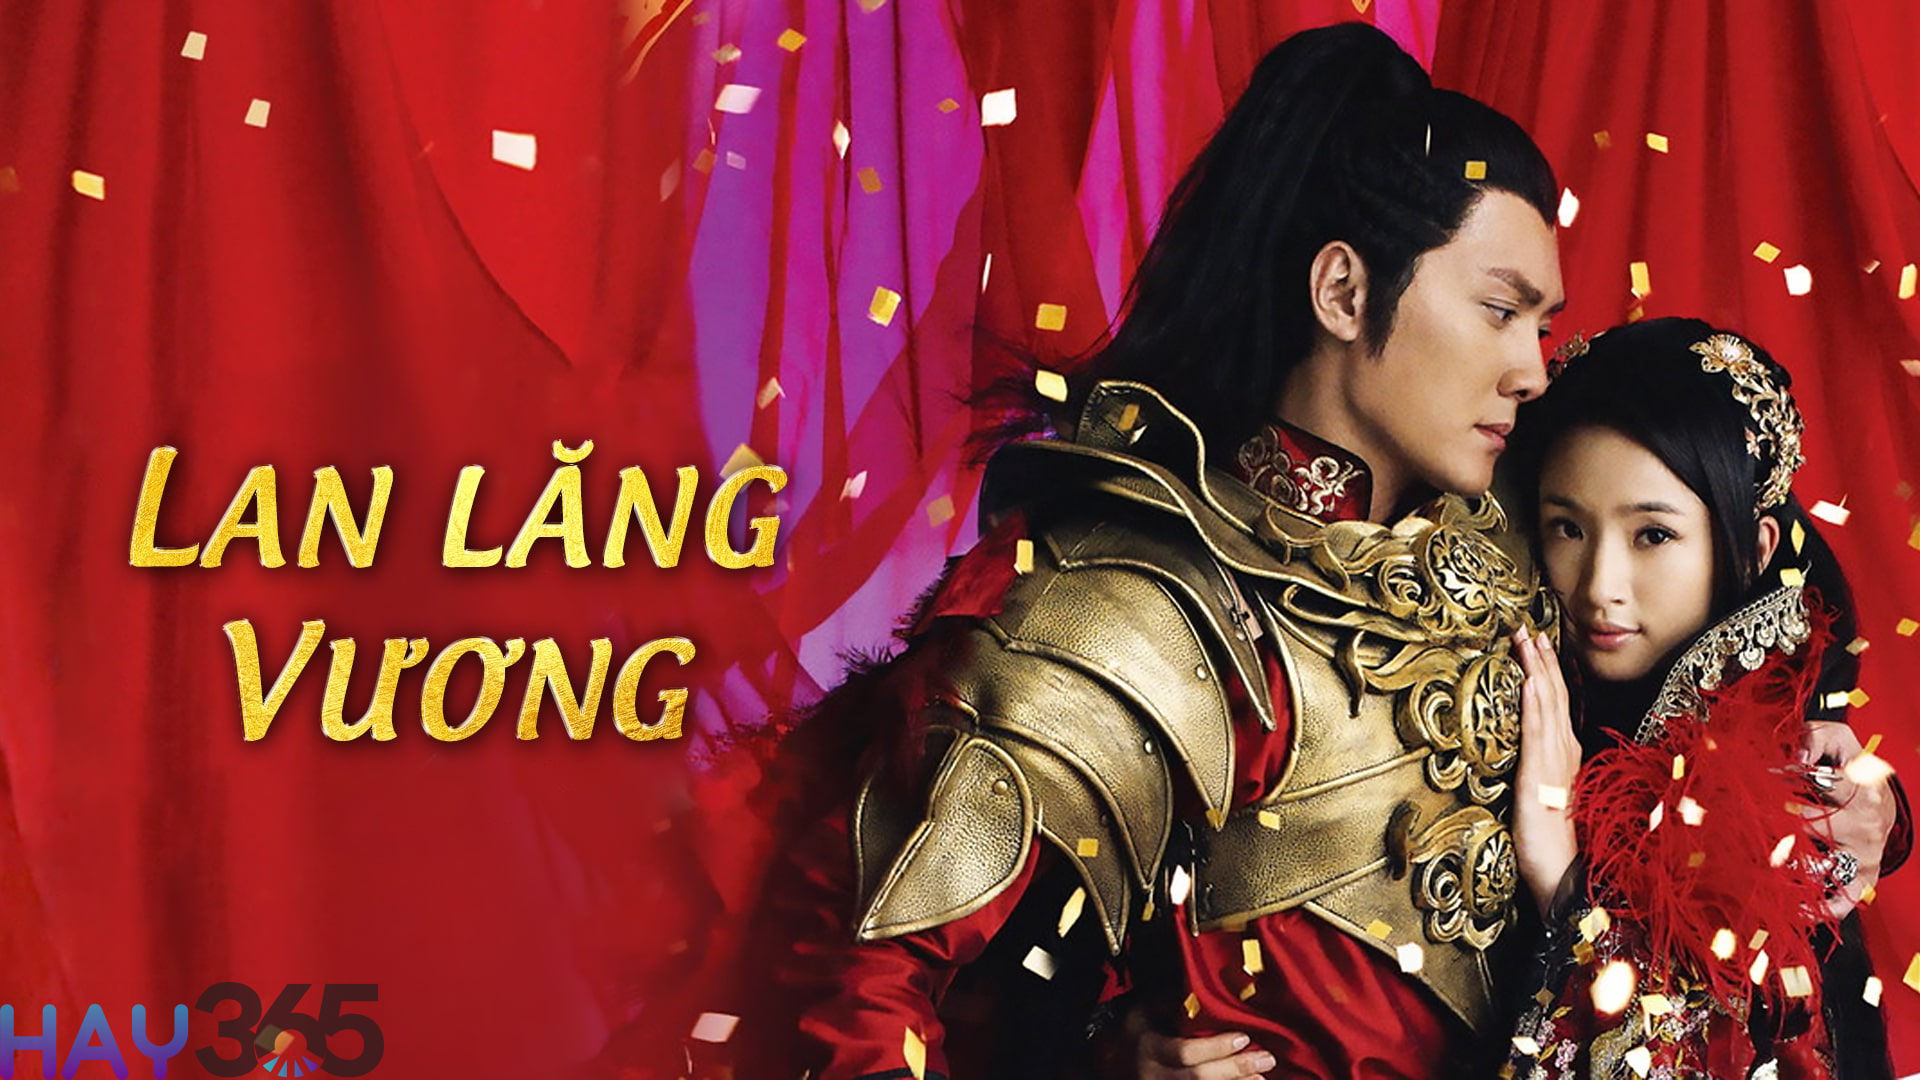 Lan Lăng Vương – Prince Of Lan Ling